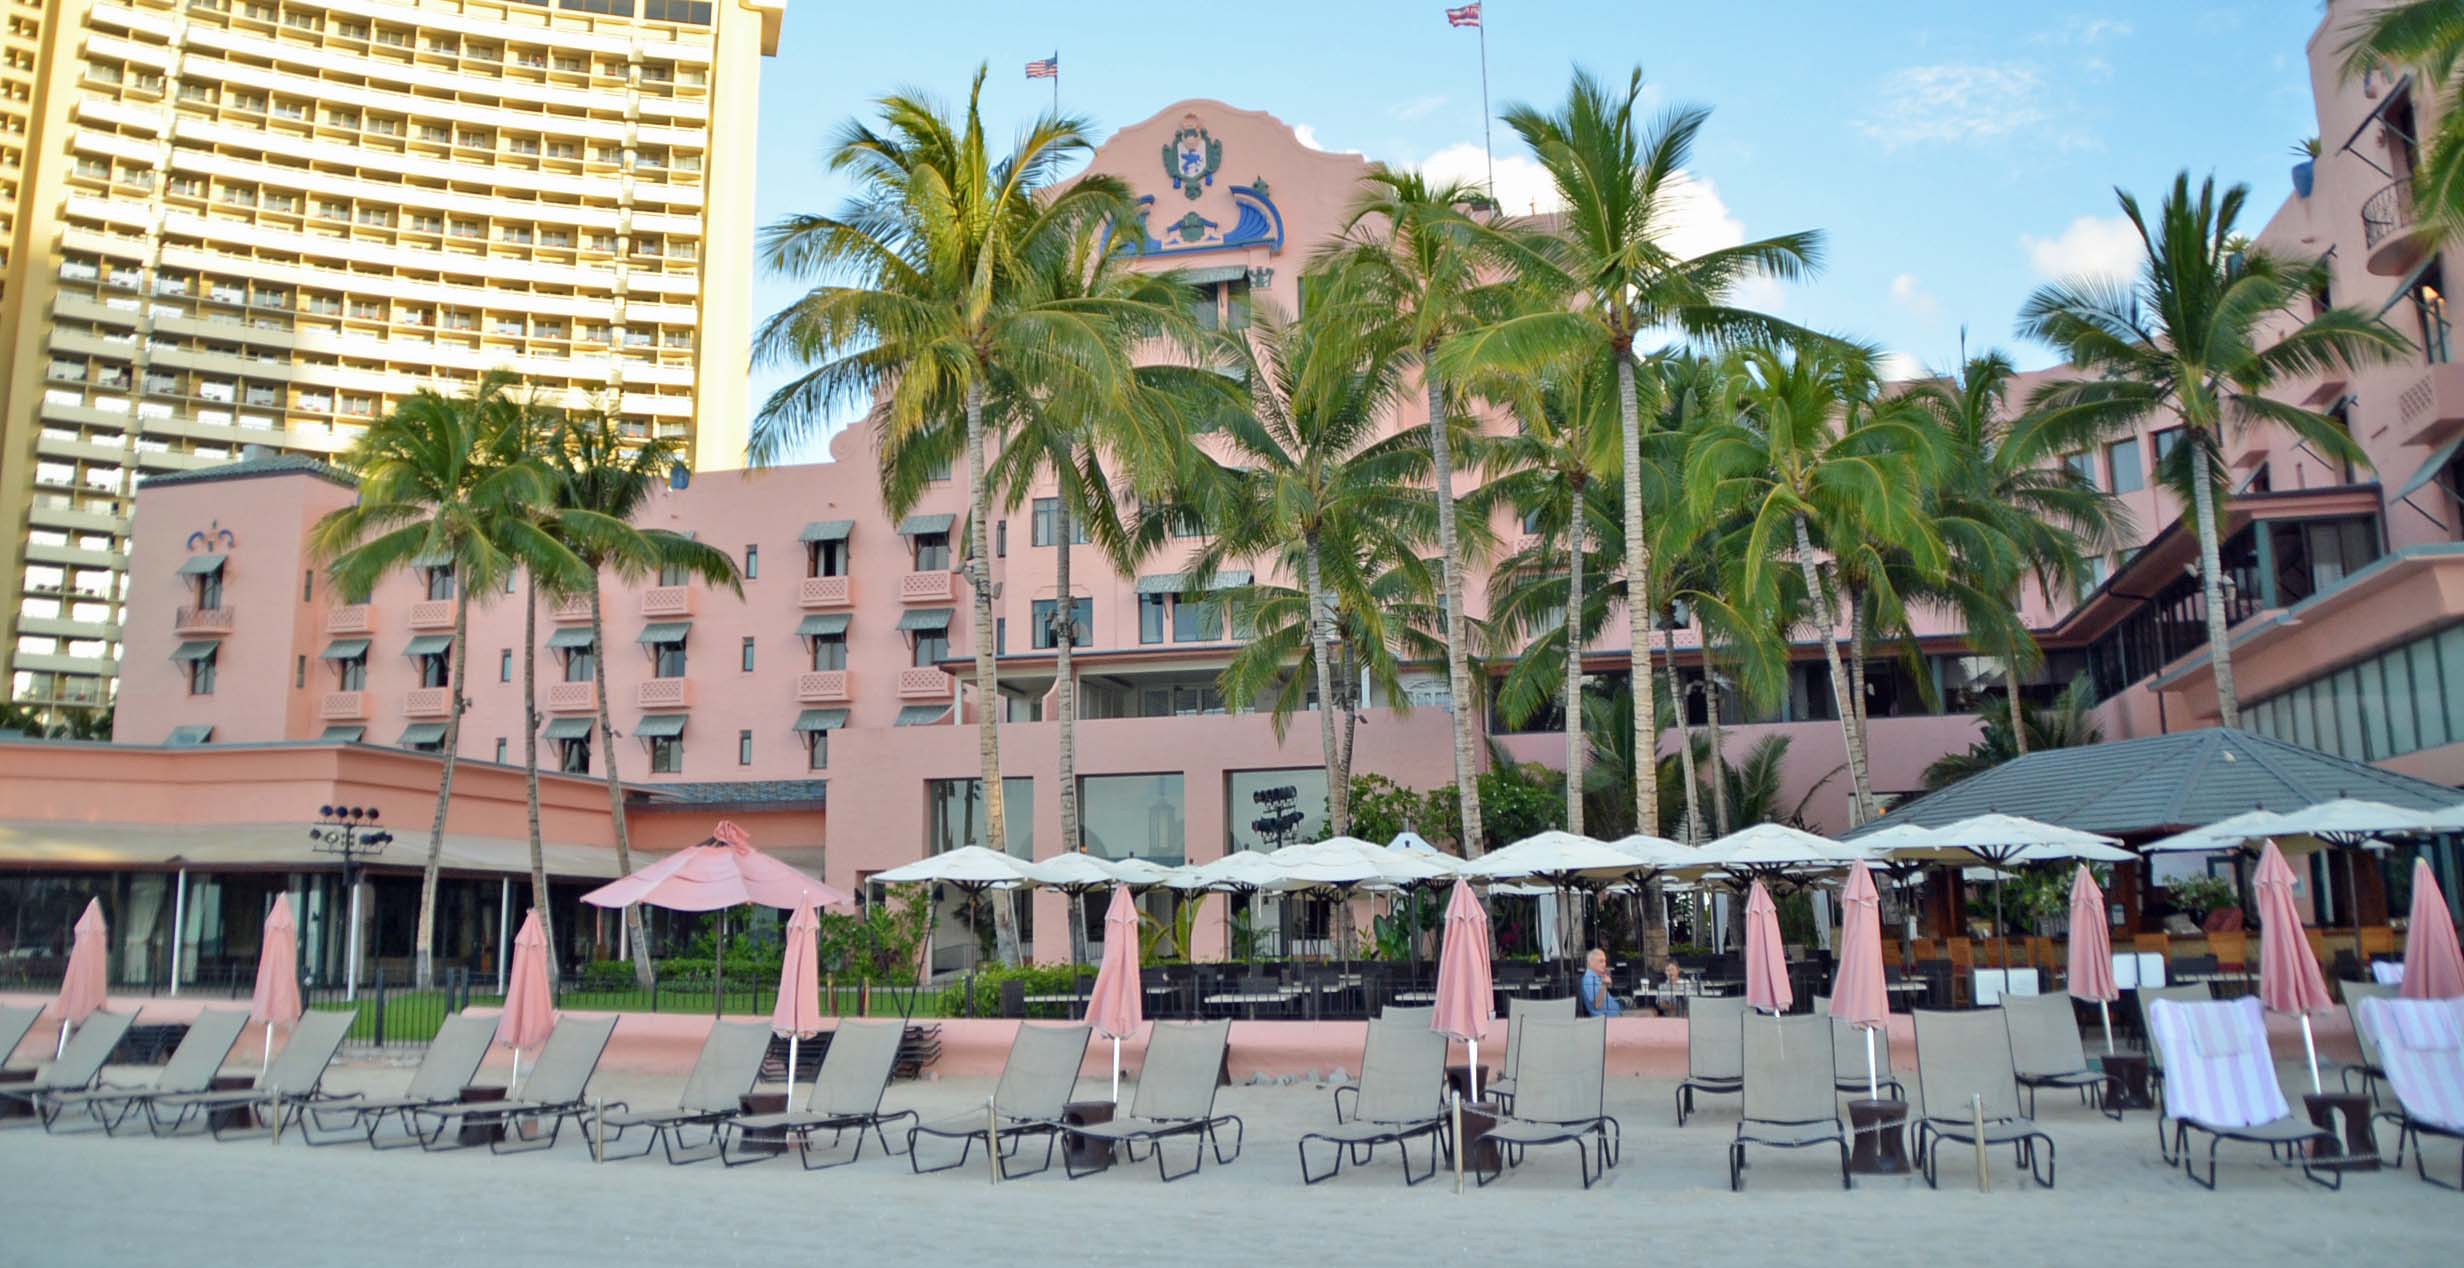 Royal Hawaiian Hotel, Waikiki